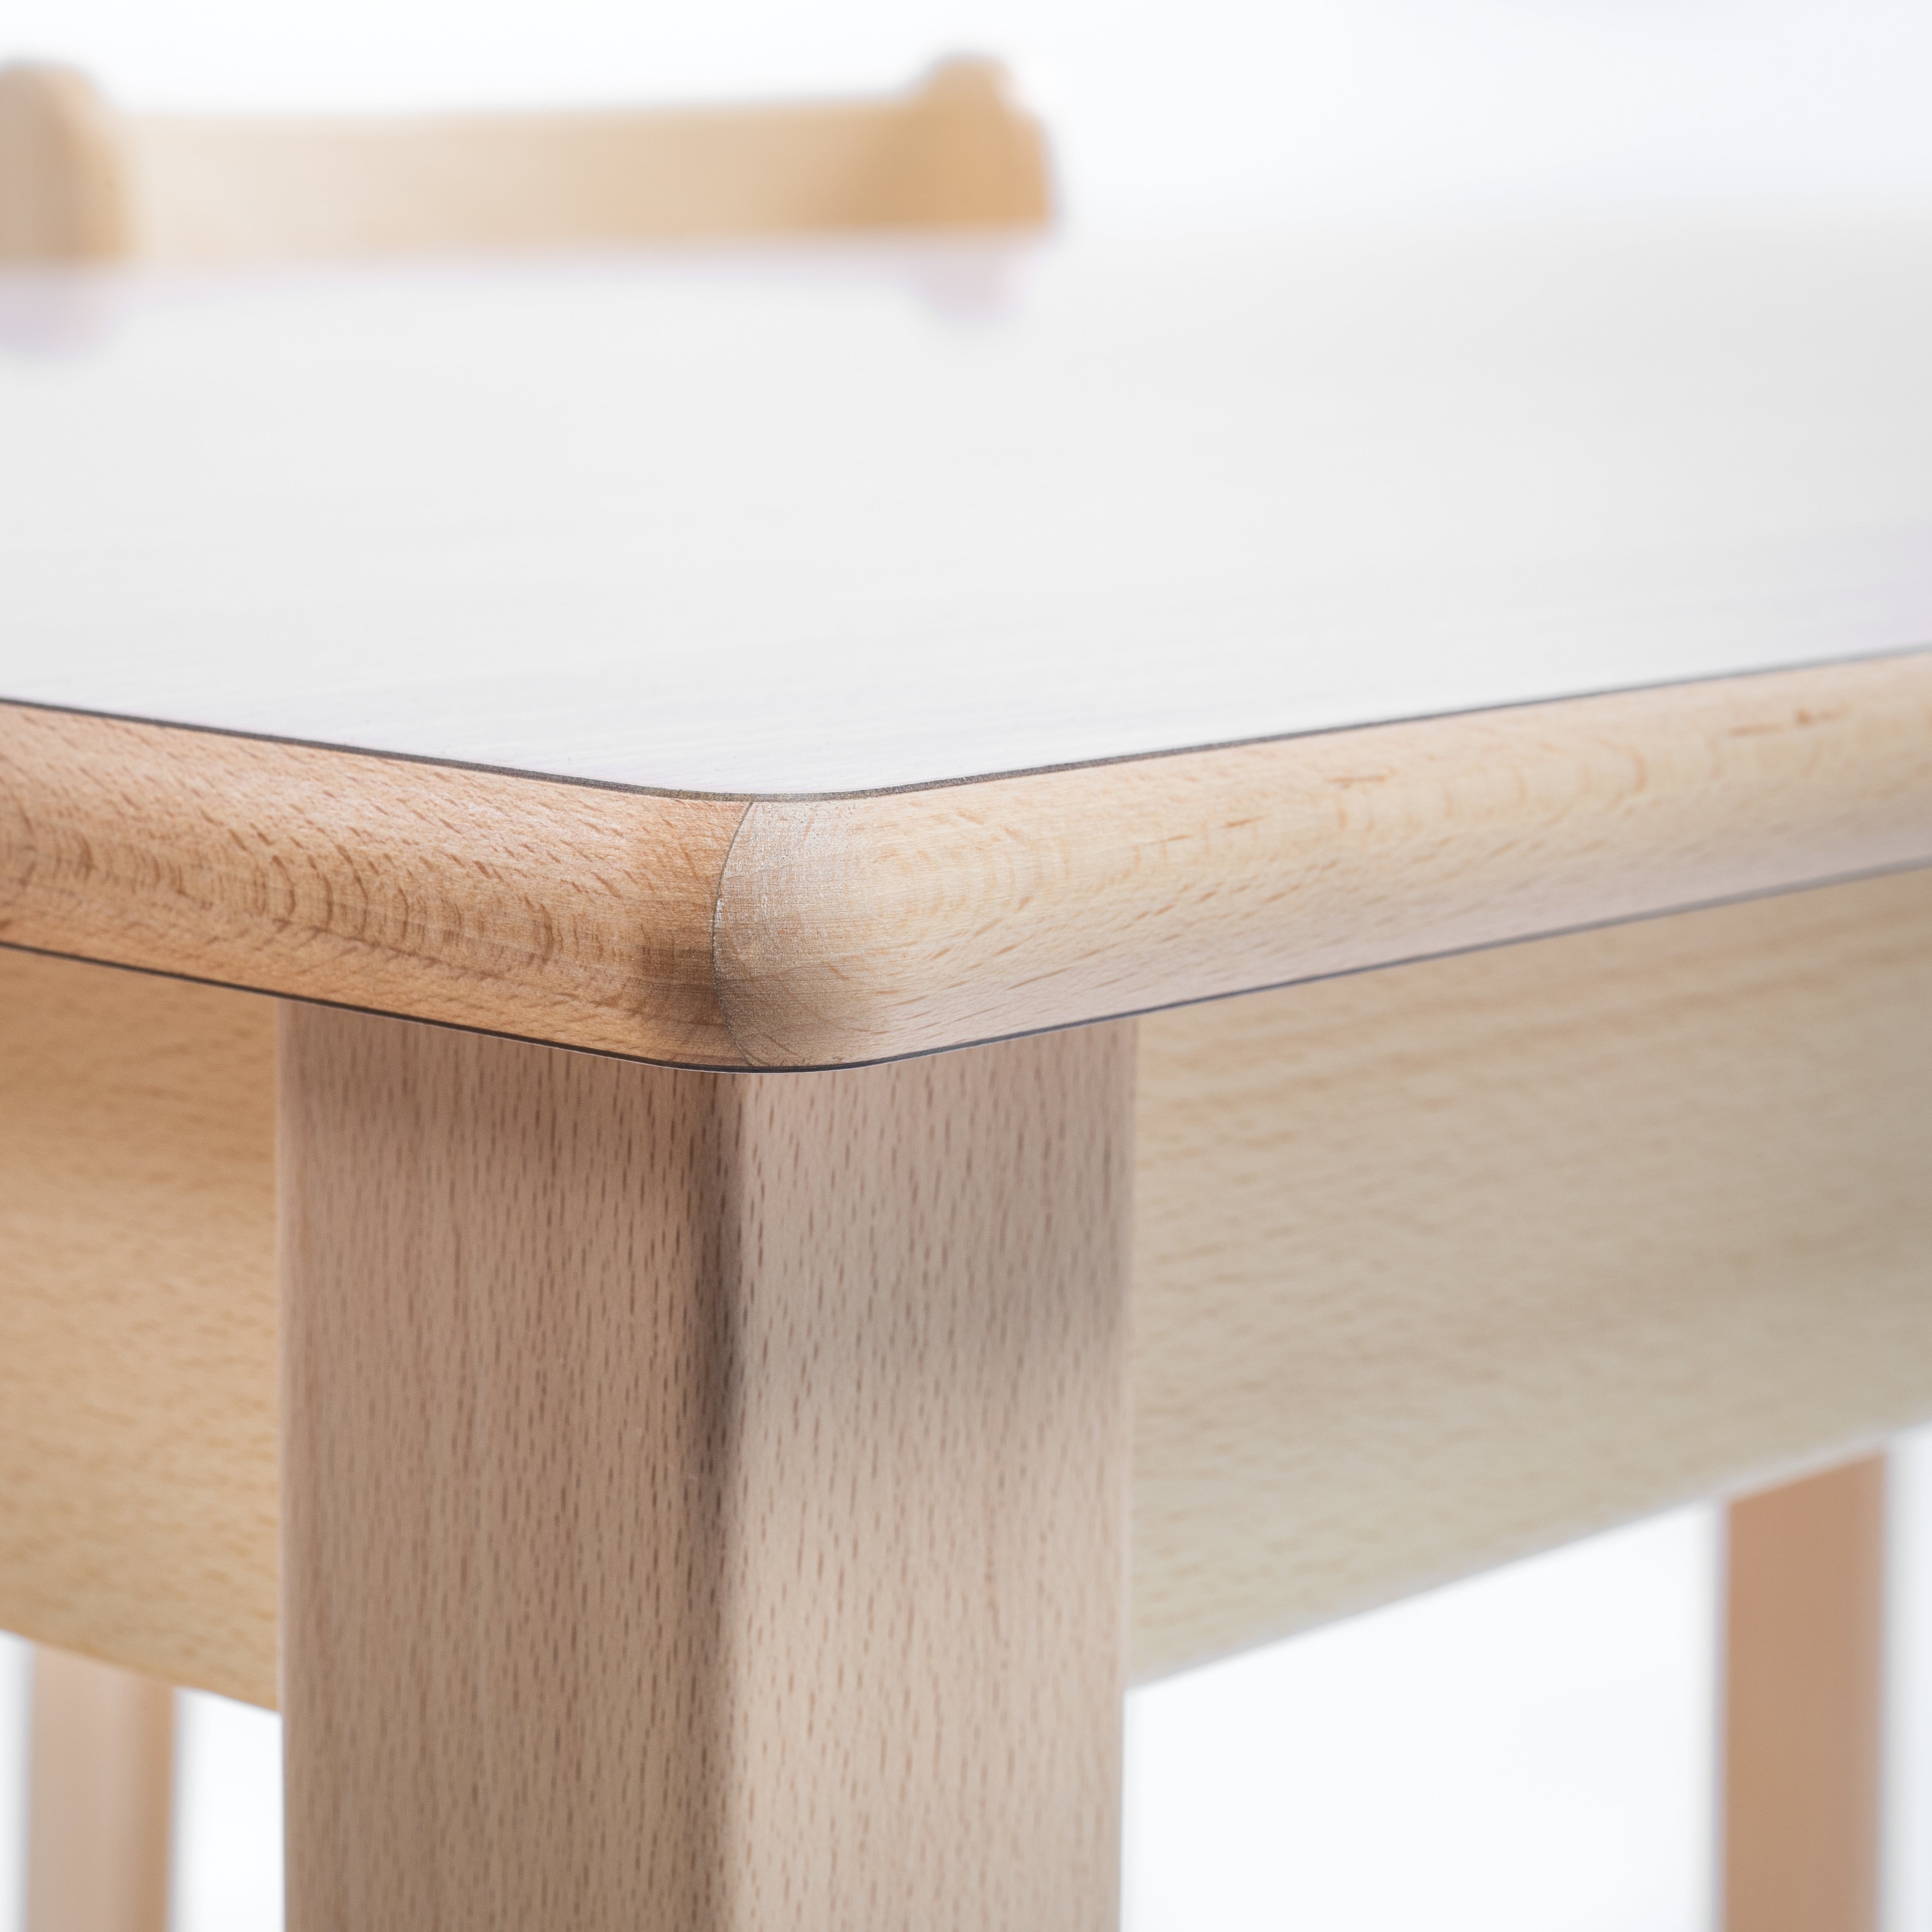 Kiga-Tisch mit Detailaufnahme einer hochwertigen Tischplatte aus Holz